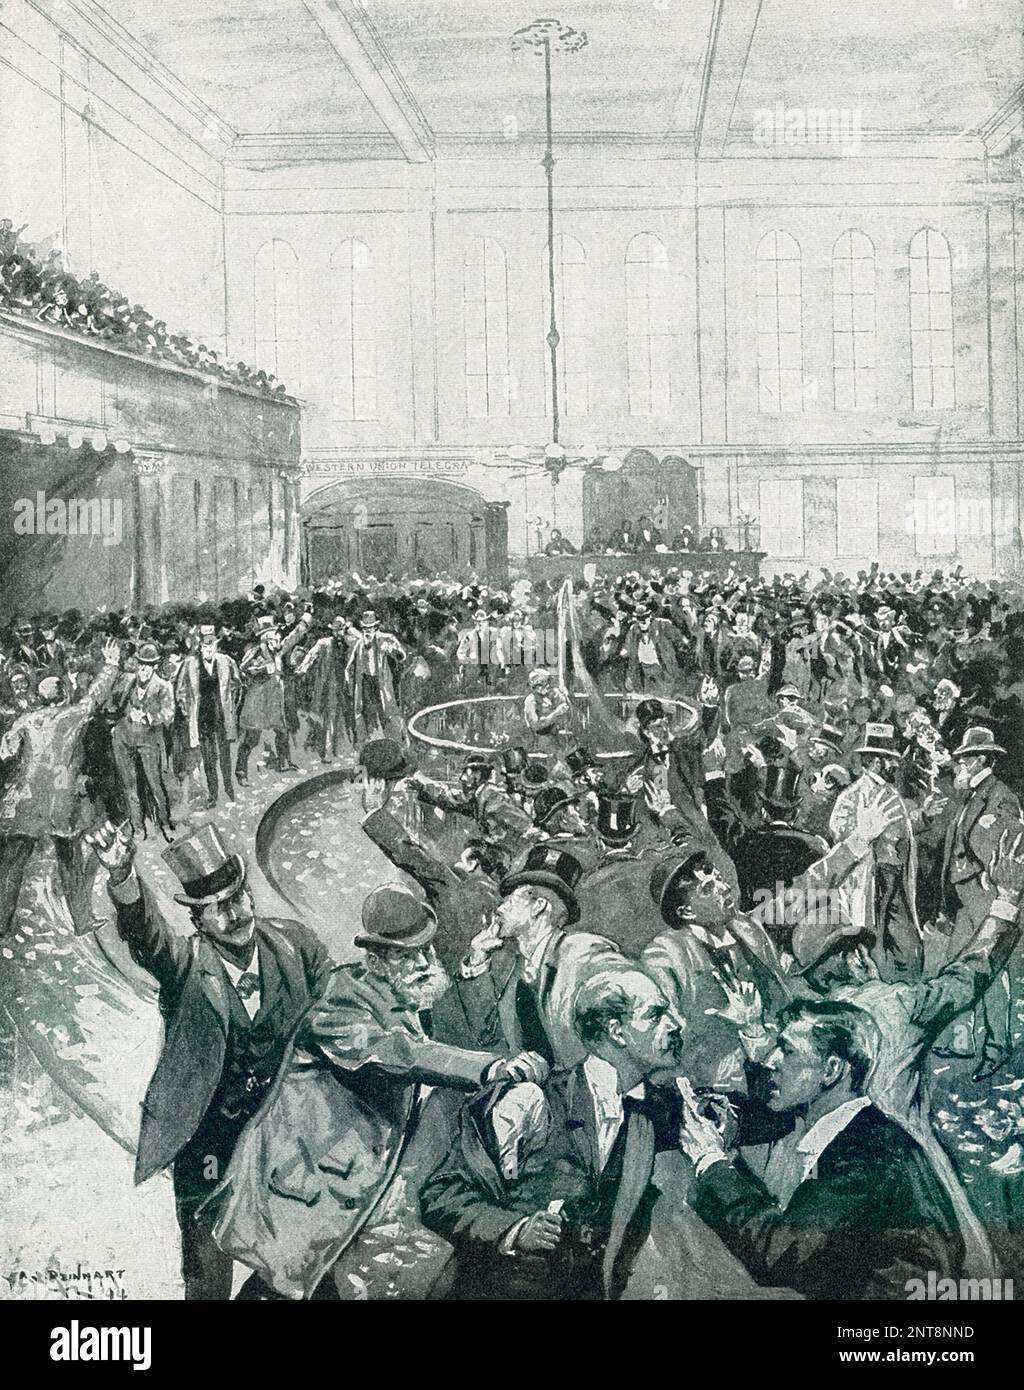 La légende de 1896 se lit comme suit : « Scene in New York Gold Room on Black Friday 24 septembre 1869, dessiné par C S Reinhart à partir de photographies et de descriptions de témoins oculaires ». Black Friday, dans l'histoire des États-Unis, une panique du marché des valeurs mobilières qui s'est produite sur 24 septembre 1869, à la suite de la chute du prix de l'or. L'accident a été la conséquence d'une tentative du financier Jay Gould et du magnat des chemins de fer James Fisk de s'orienter vers le marché de l'or et de faire monter le prix. Banque D'Images